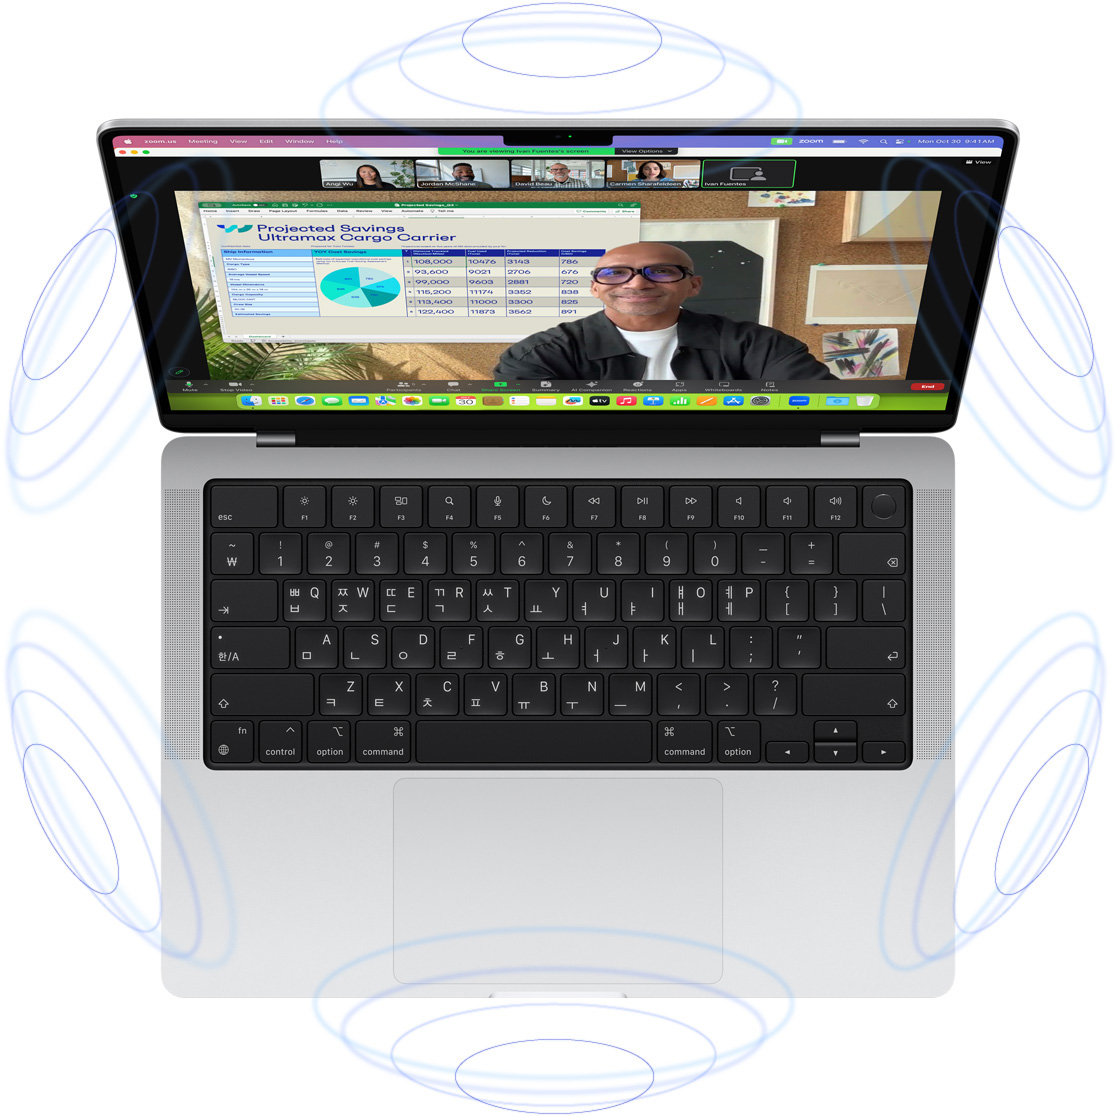 MacBook Pro에서 FaceTime 영상 통화를 하는 모습. 공간 음향의 3D 사운드를 묘사한 파란색 원 이미지들이 기기 주위를 감싸고 있습니다